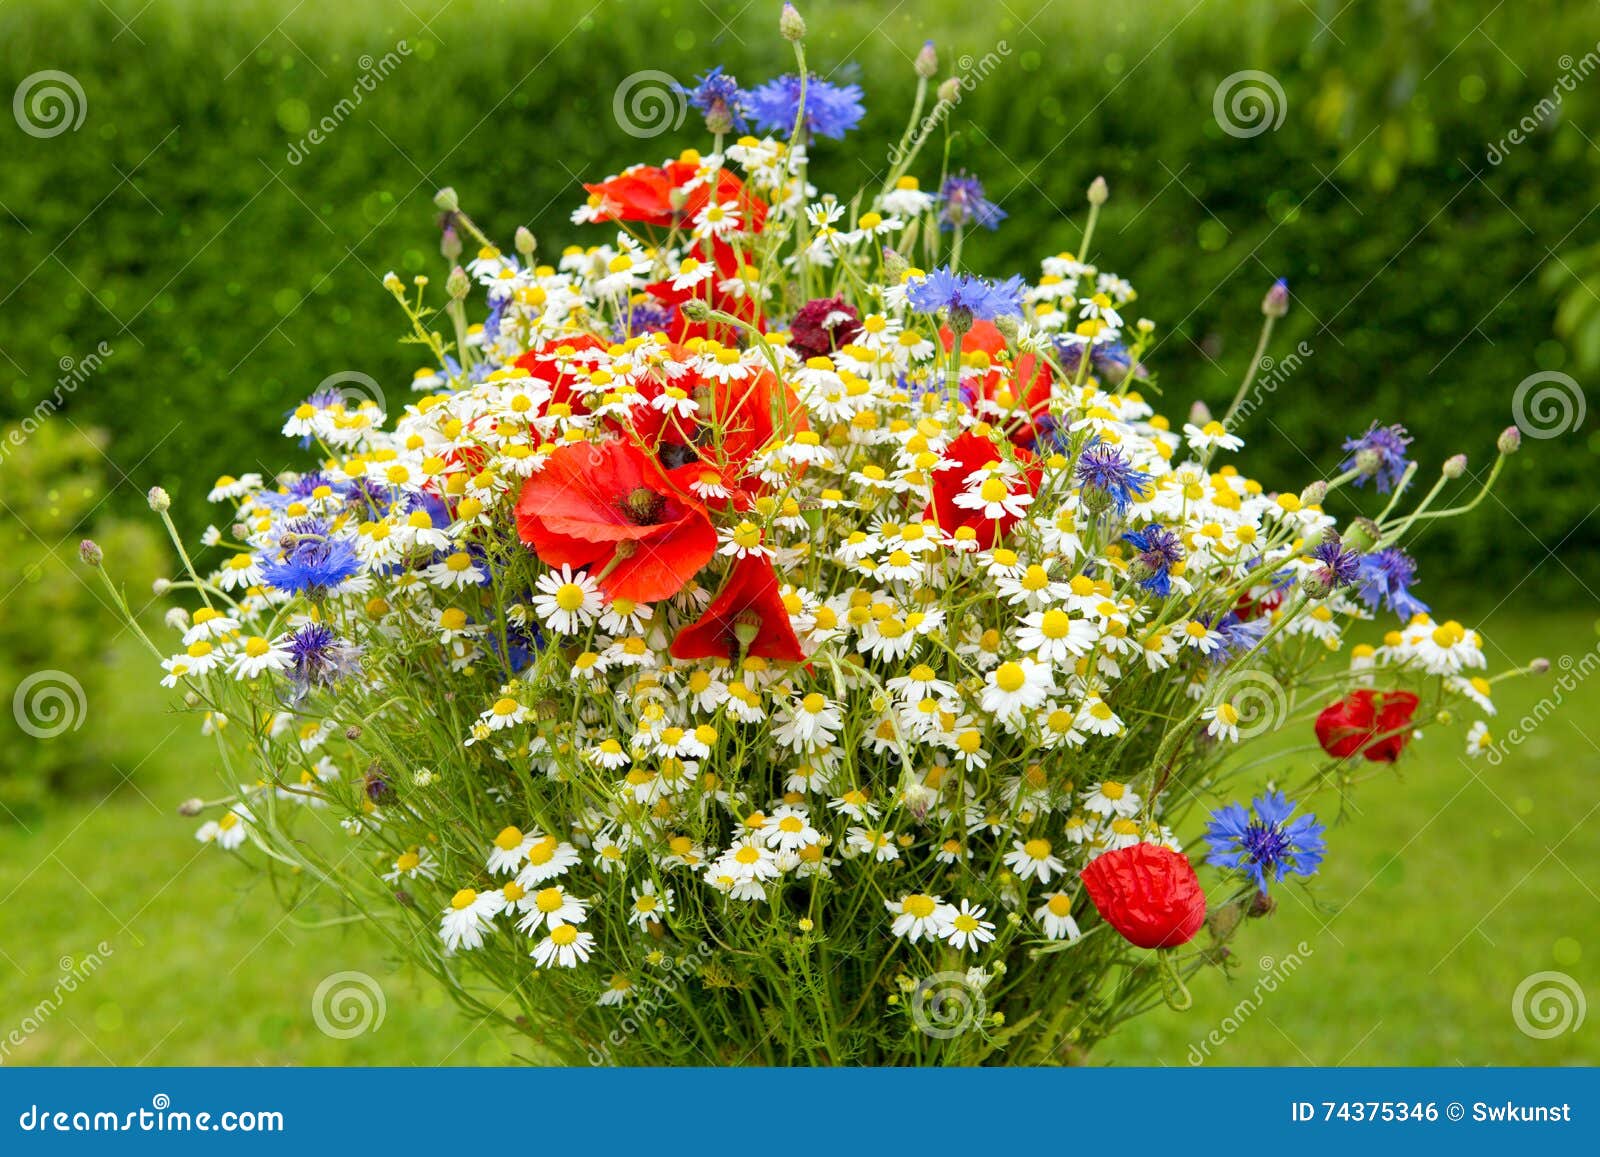 Bouquet de fleur sauvage photo stock. Image du bleuet - 74375346